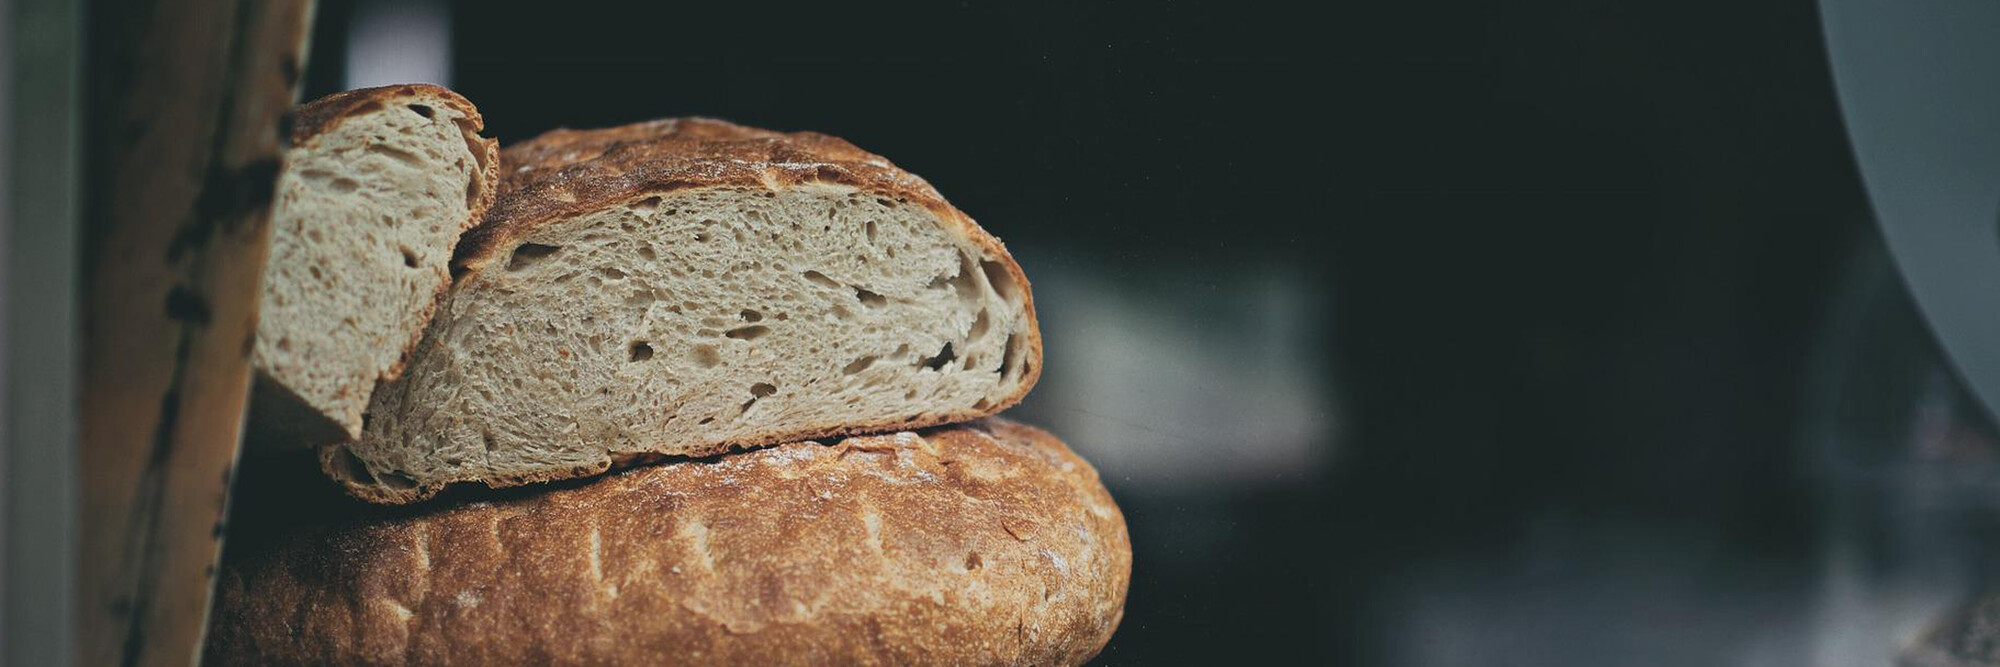  Le pain et le levain, une histoire d’amour qui fonctionne bien